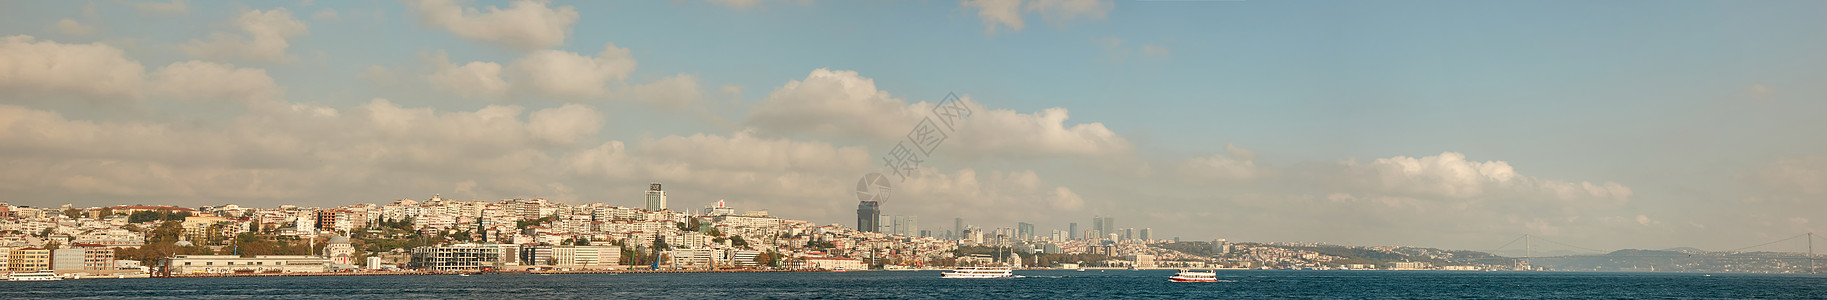 伊斯坦布尔市的美丽全景蓝天白云火鸡伊斯坦布尔市的美丽全景图片